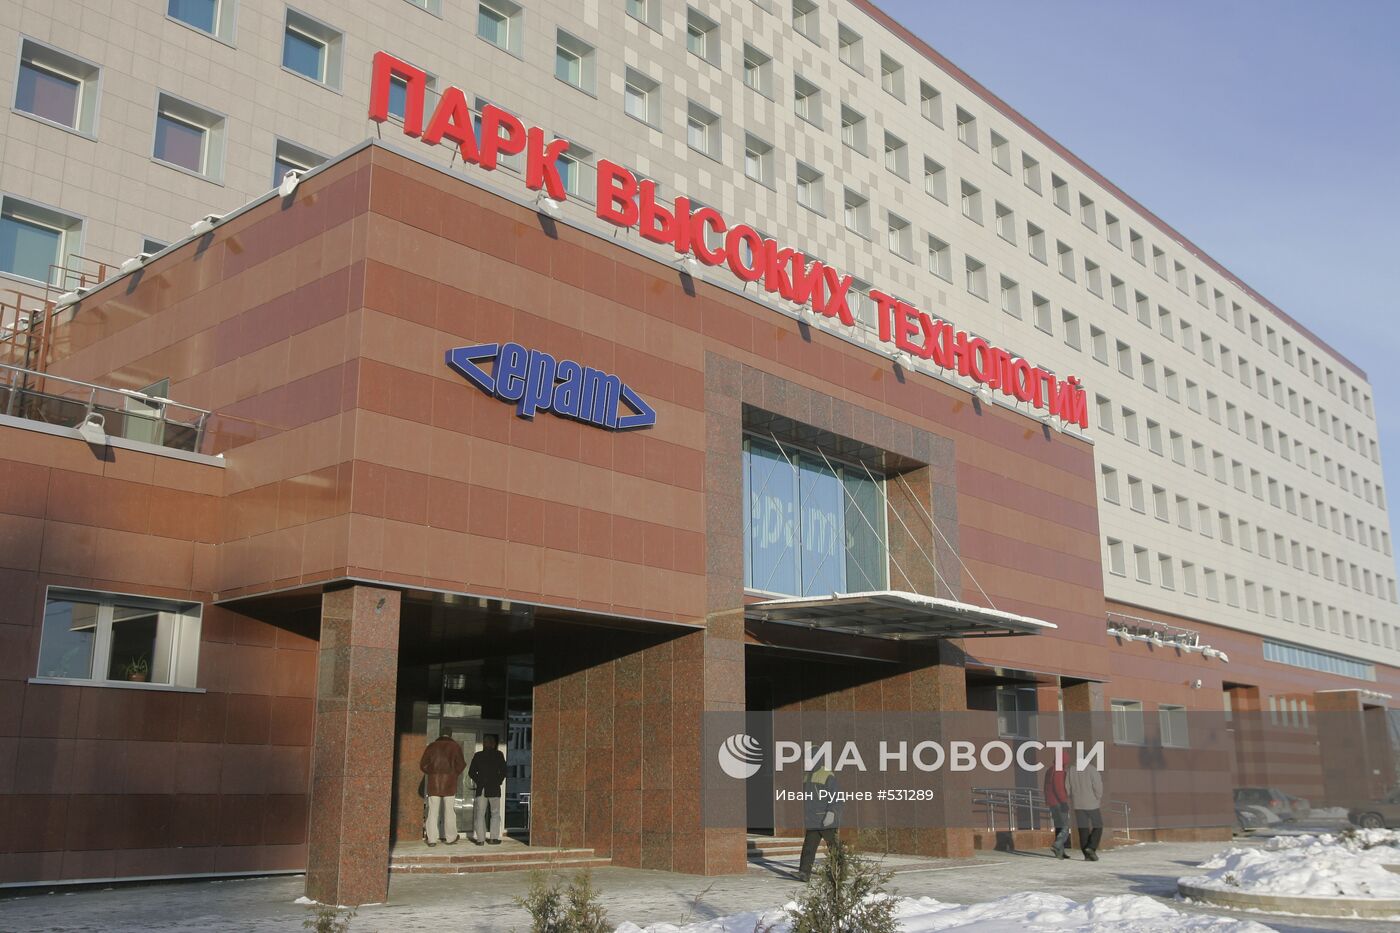 Белорусский Парк высоких технологий